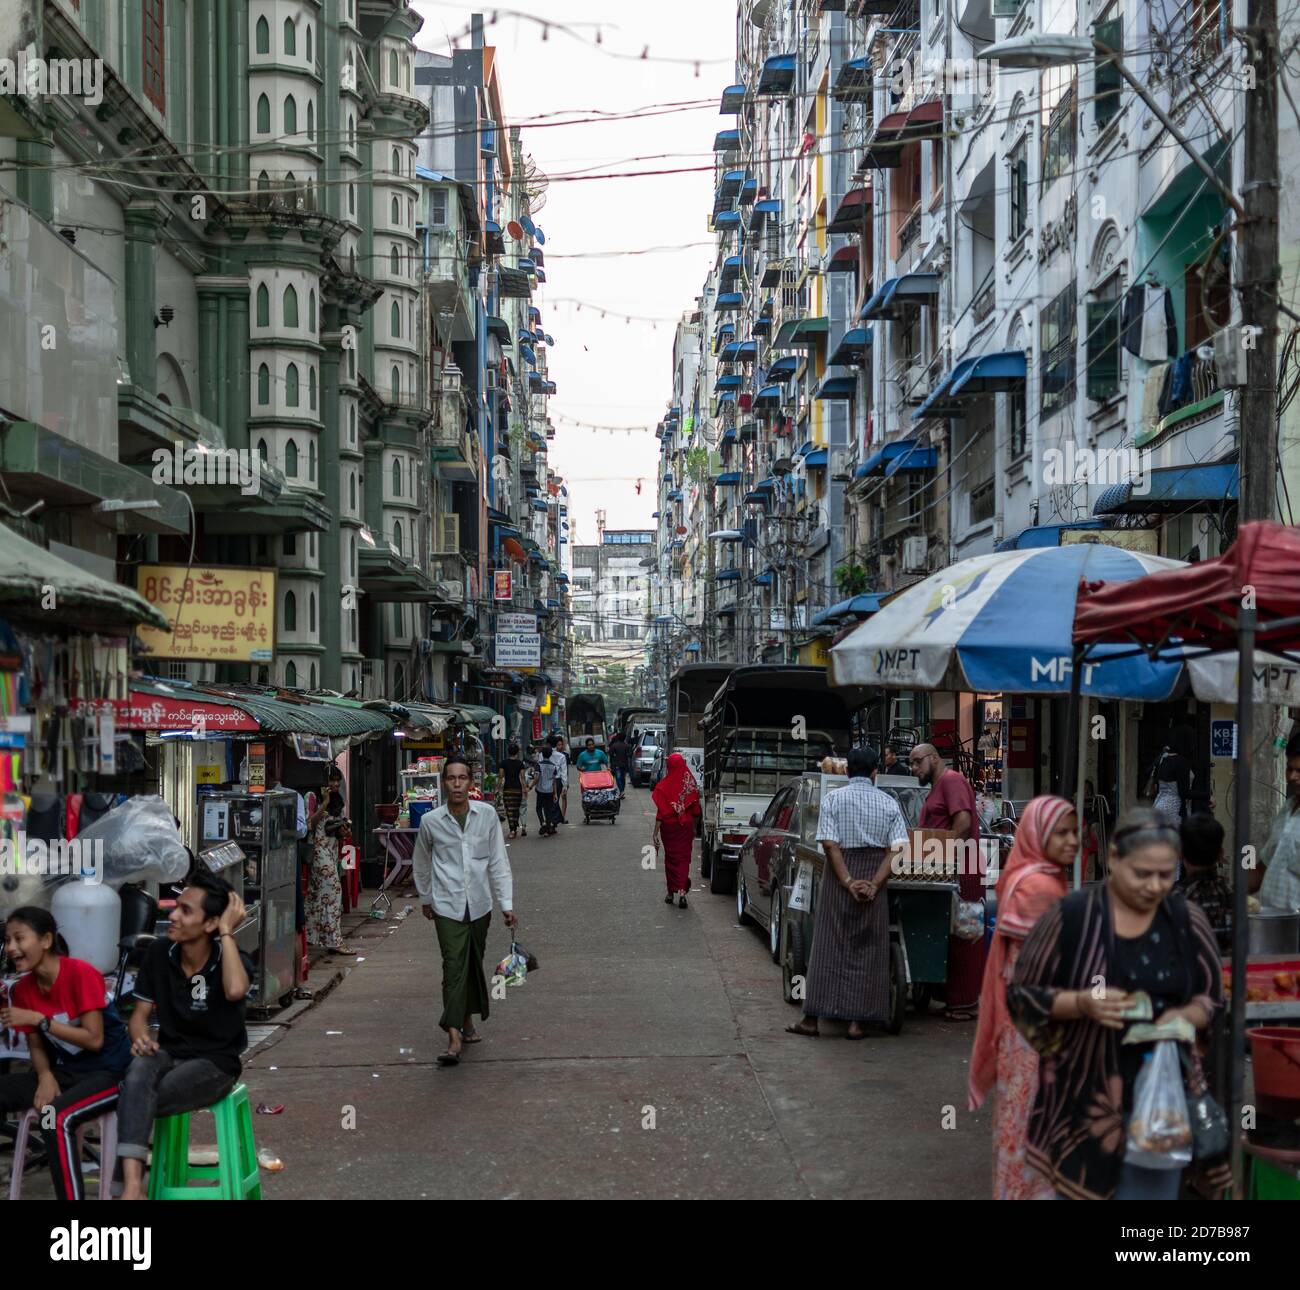 Yangon, Myanmar - 30 de diciembre de 2019: La vida cotidiana ocurre en una calle estrecha local en el centro de la ciudad con coches estacionados y peatones caminando Foto de stock